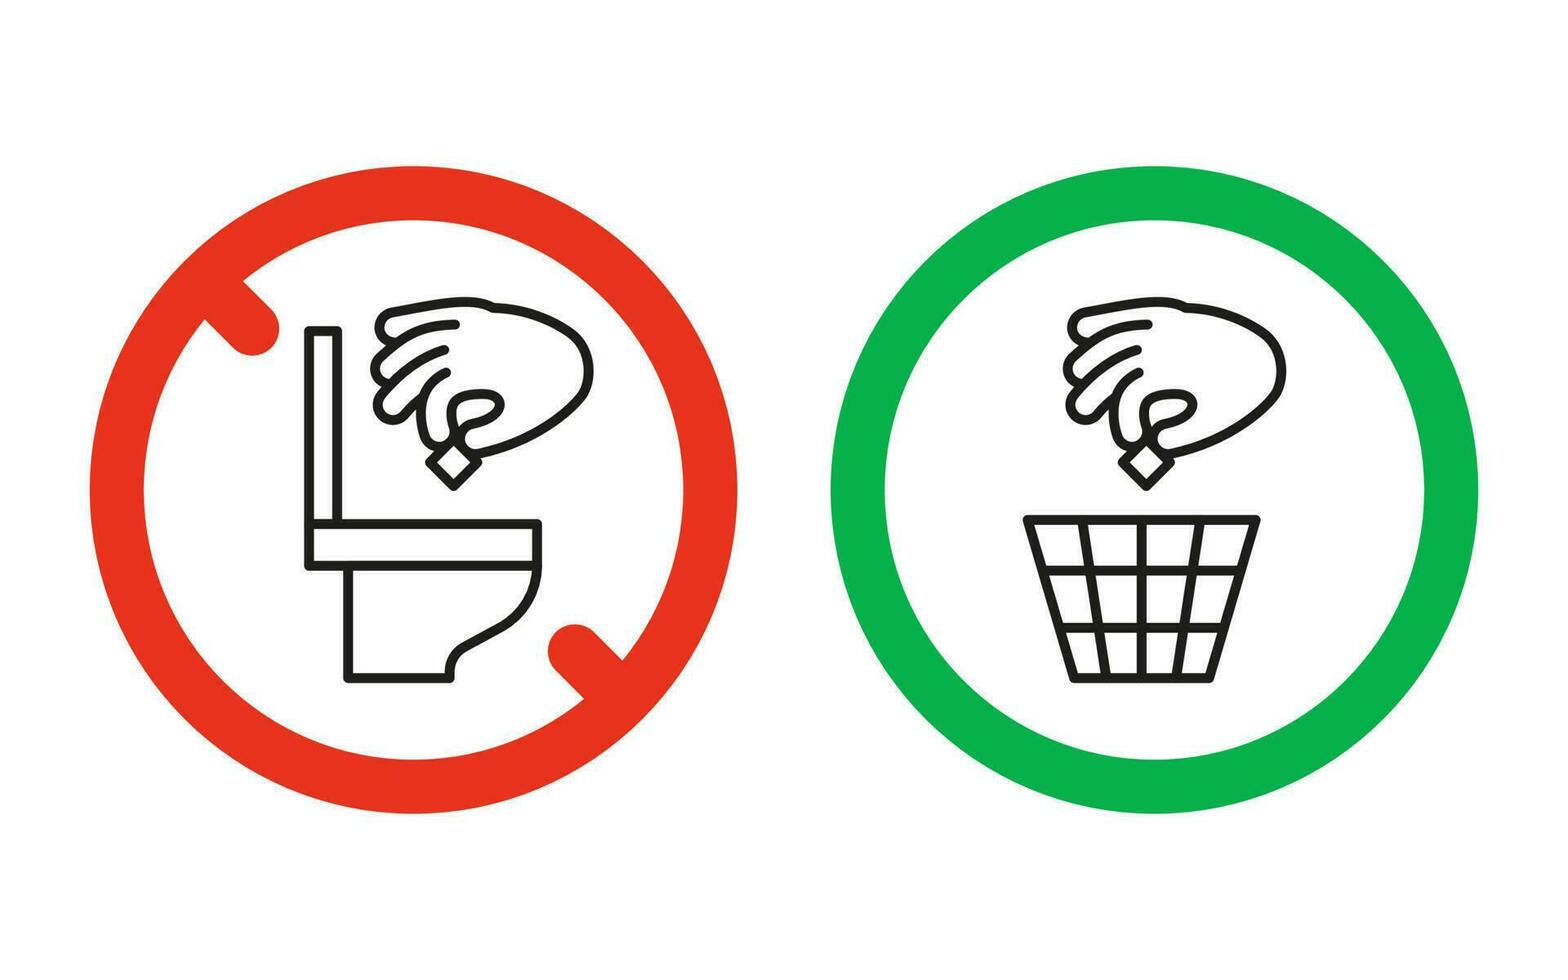 regra retire o lixo na cesta, mas não no vaso sanitário, sinal de aviso de proibição. não jogue lixo no vaso sanitário. pode jogar lixo na lata de lixo. problema da poluição do planeta, limpo. vetor